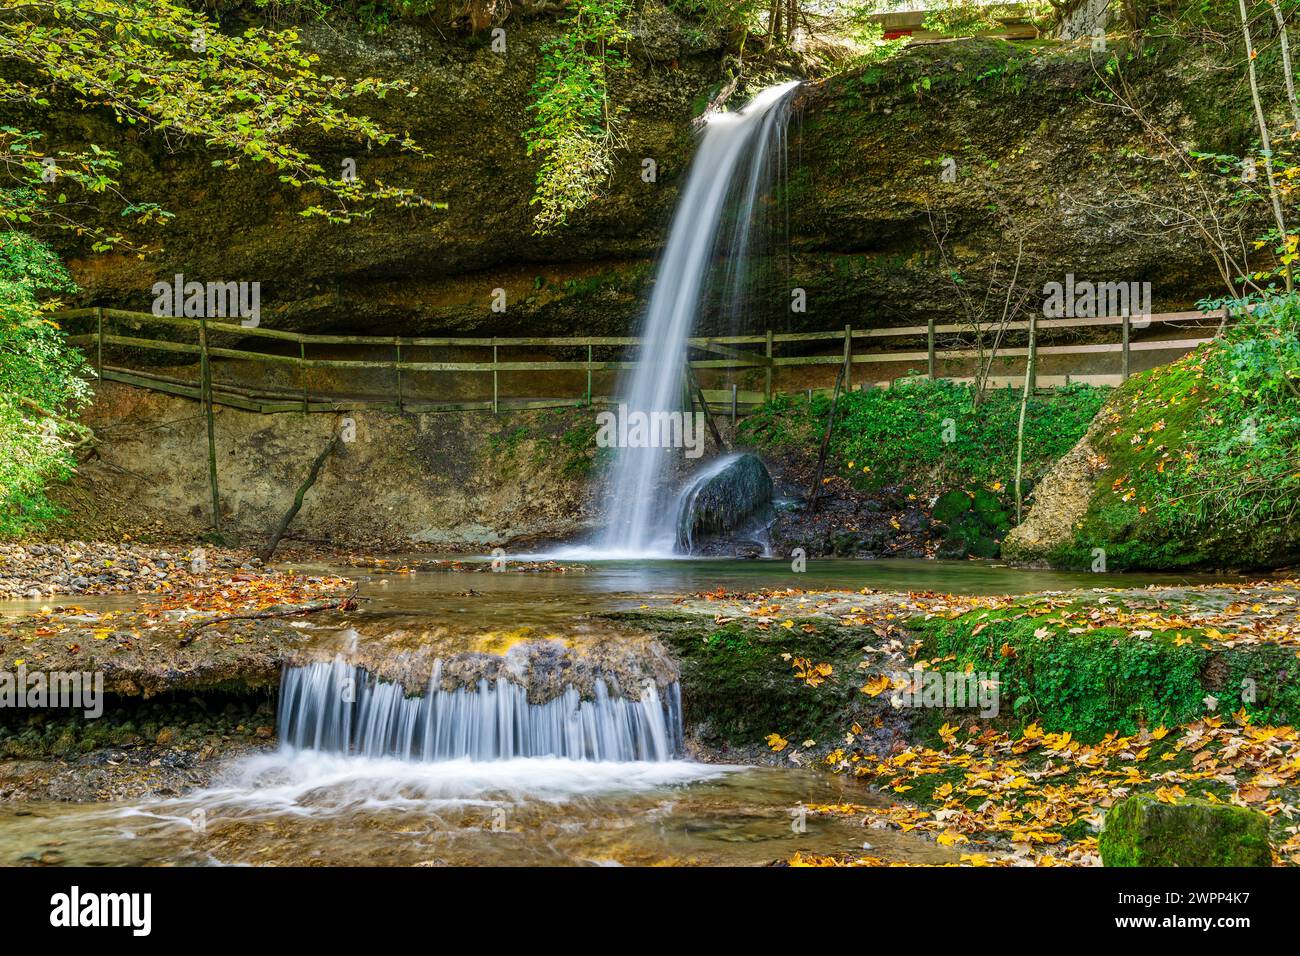 Deutschland, Bayern, Scheidegg, Scheidegg Wasserfälle, am 1. Wasserfall. Die Scheidegg-Wasserfälle stehen auf der Liste der schönsten Geotope Bayerns. Stockfoto